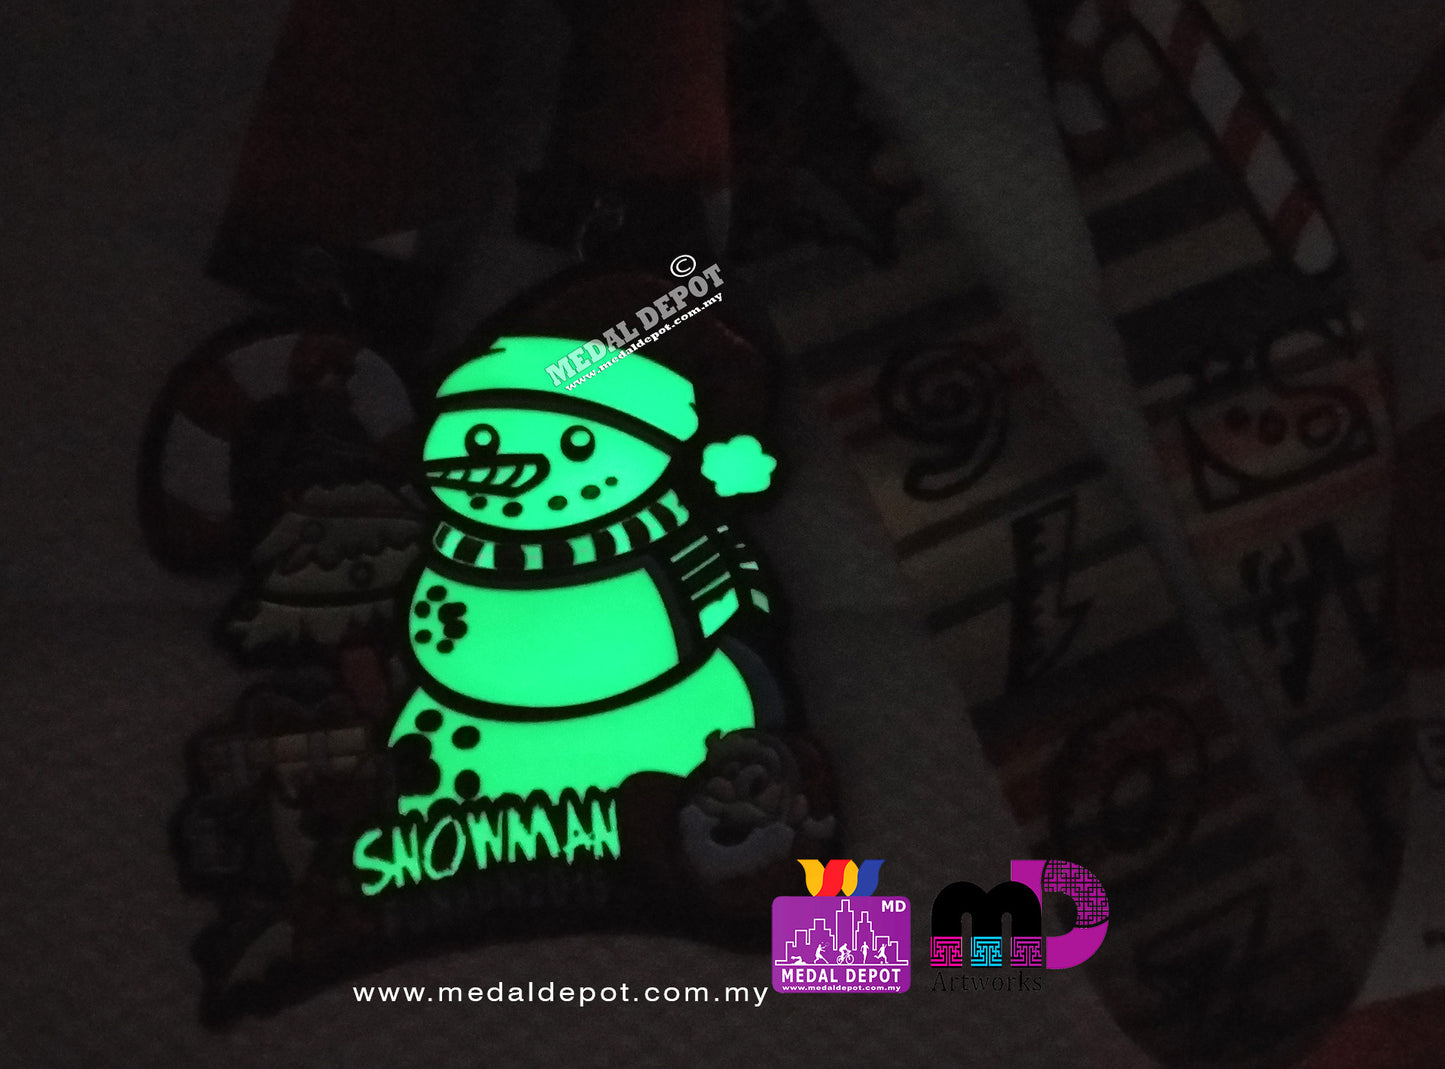 Snowman Fun Run 2016